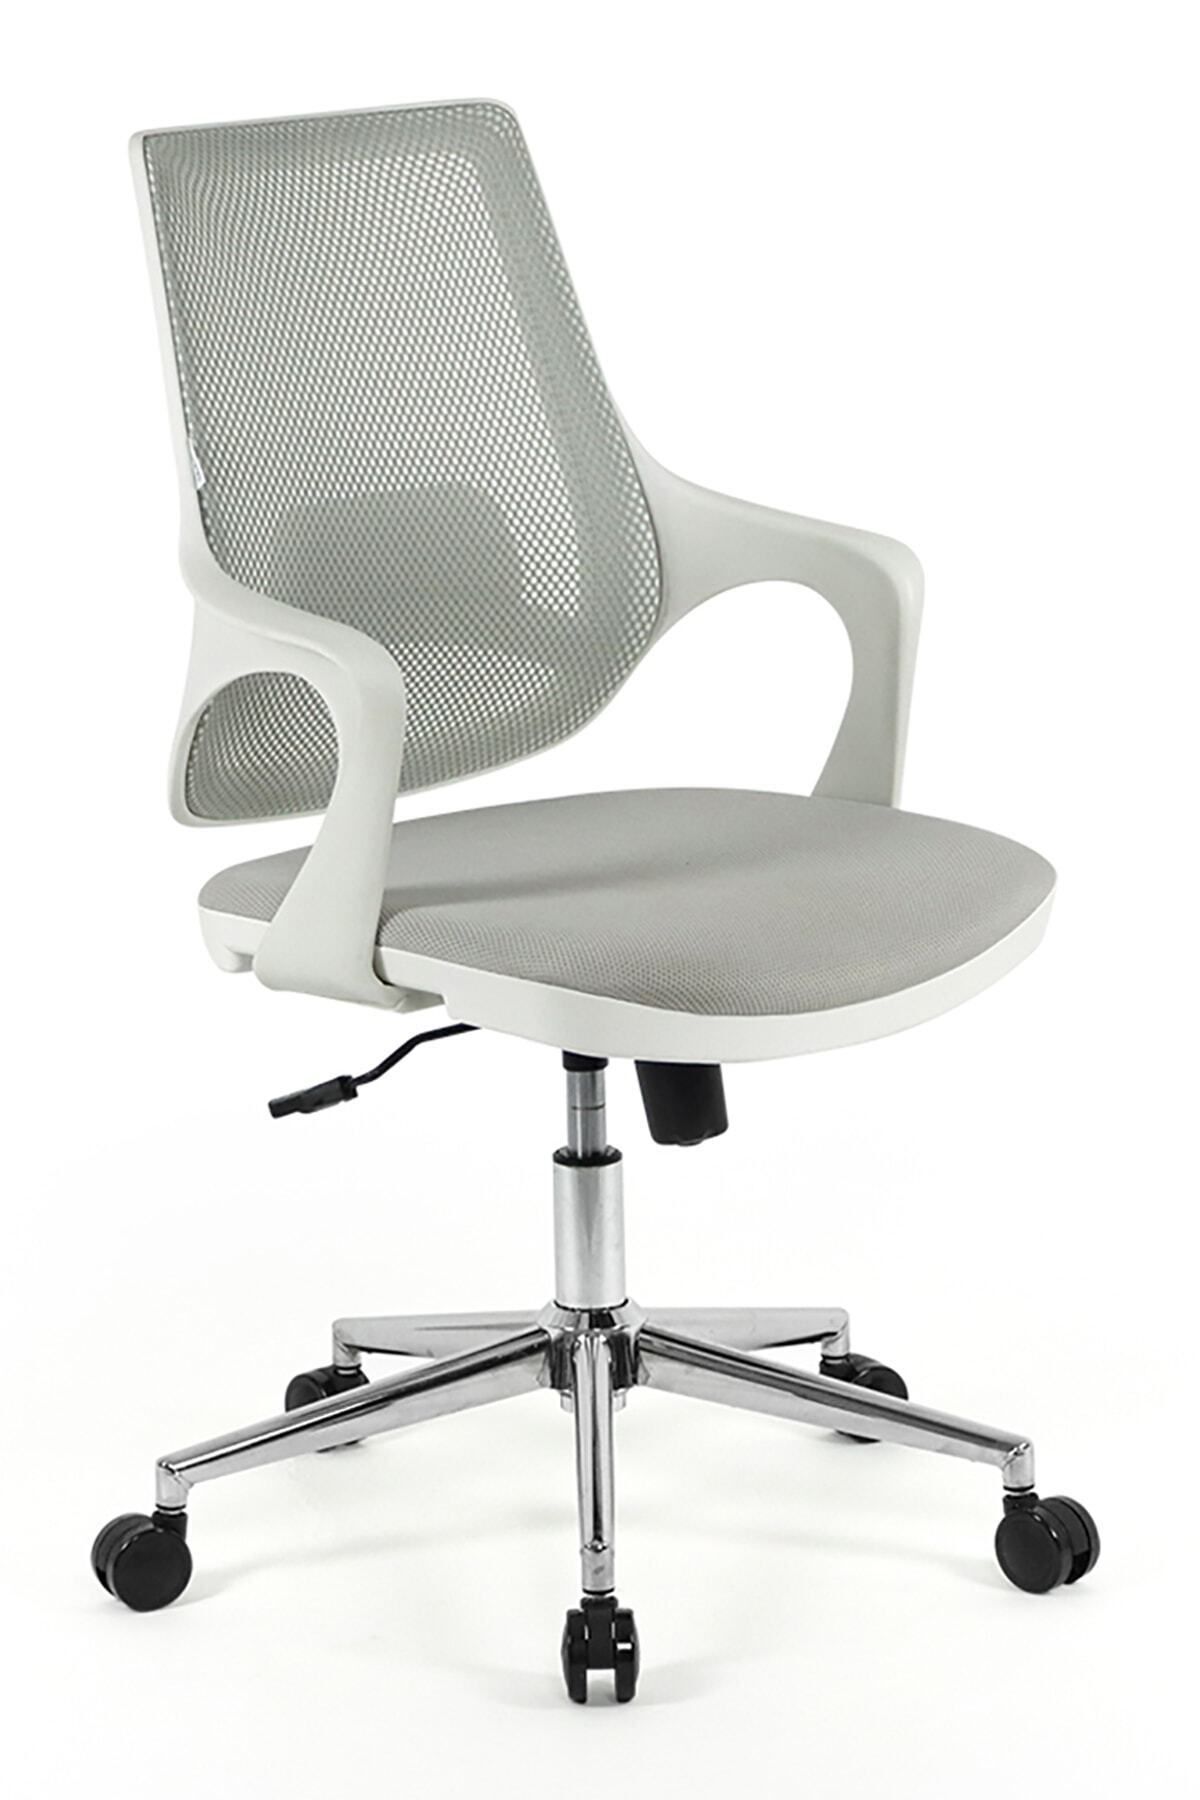 Seduna Skagen Plus Çalışma Sandalyesi | Ofis Koltuğu